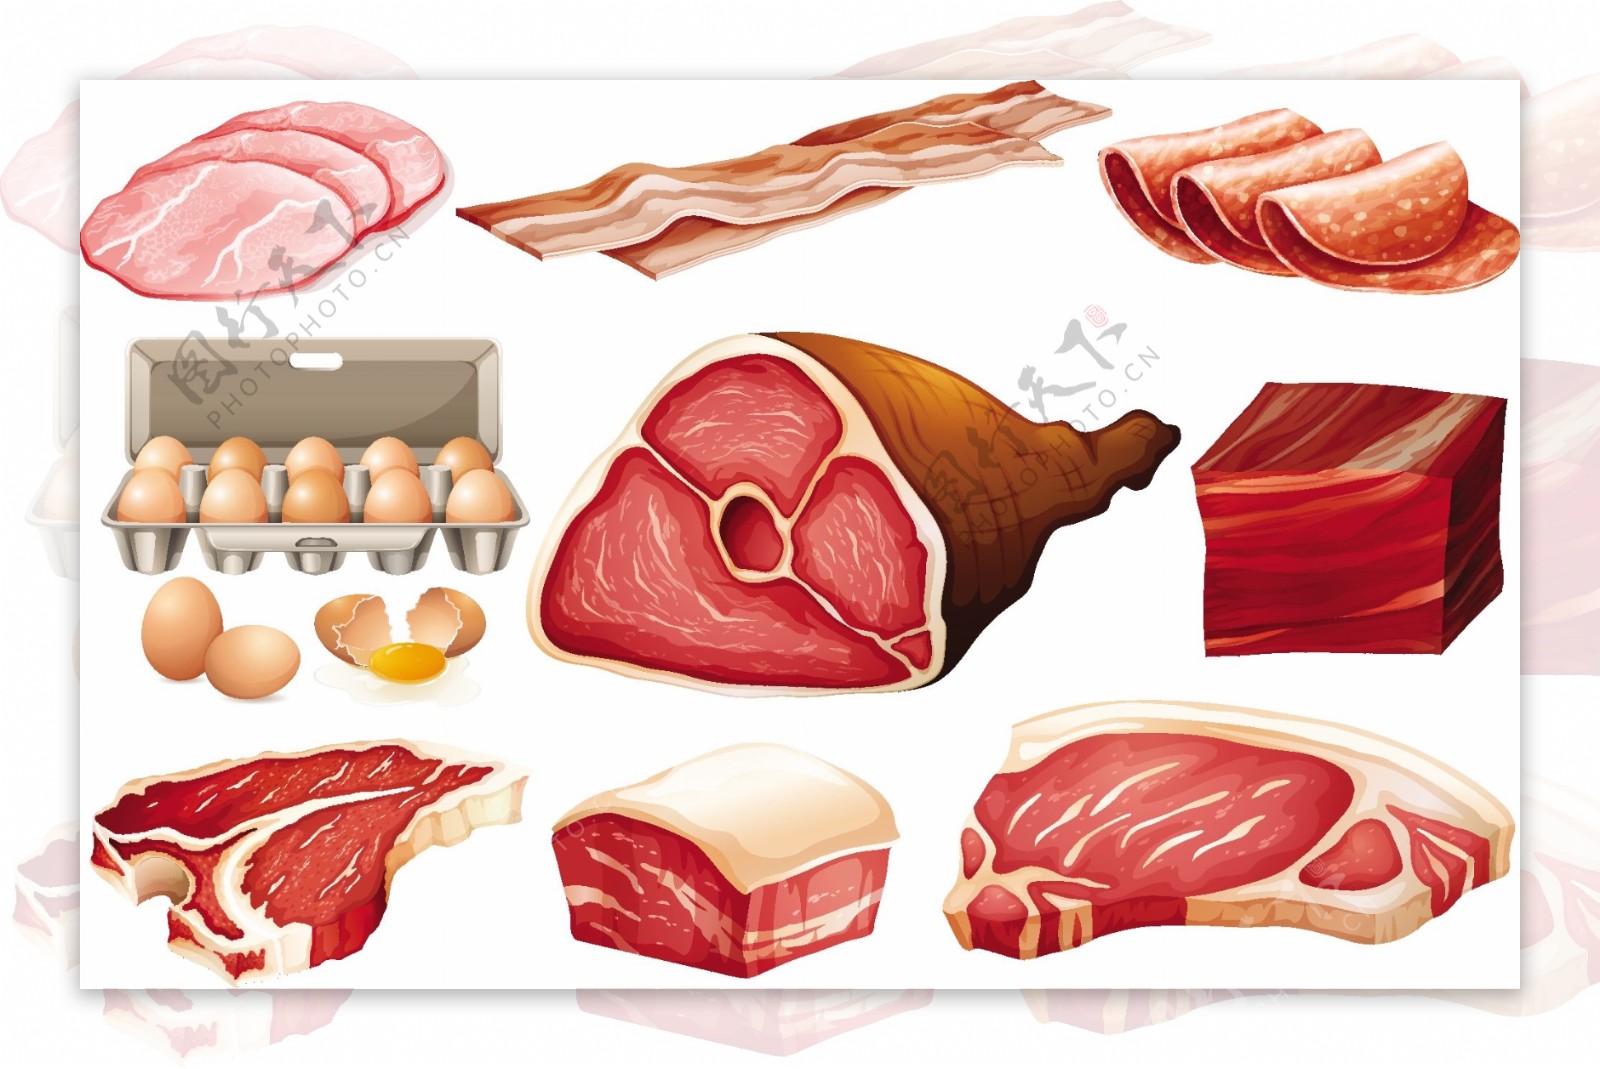 肉制品新鲜成分说明